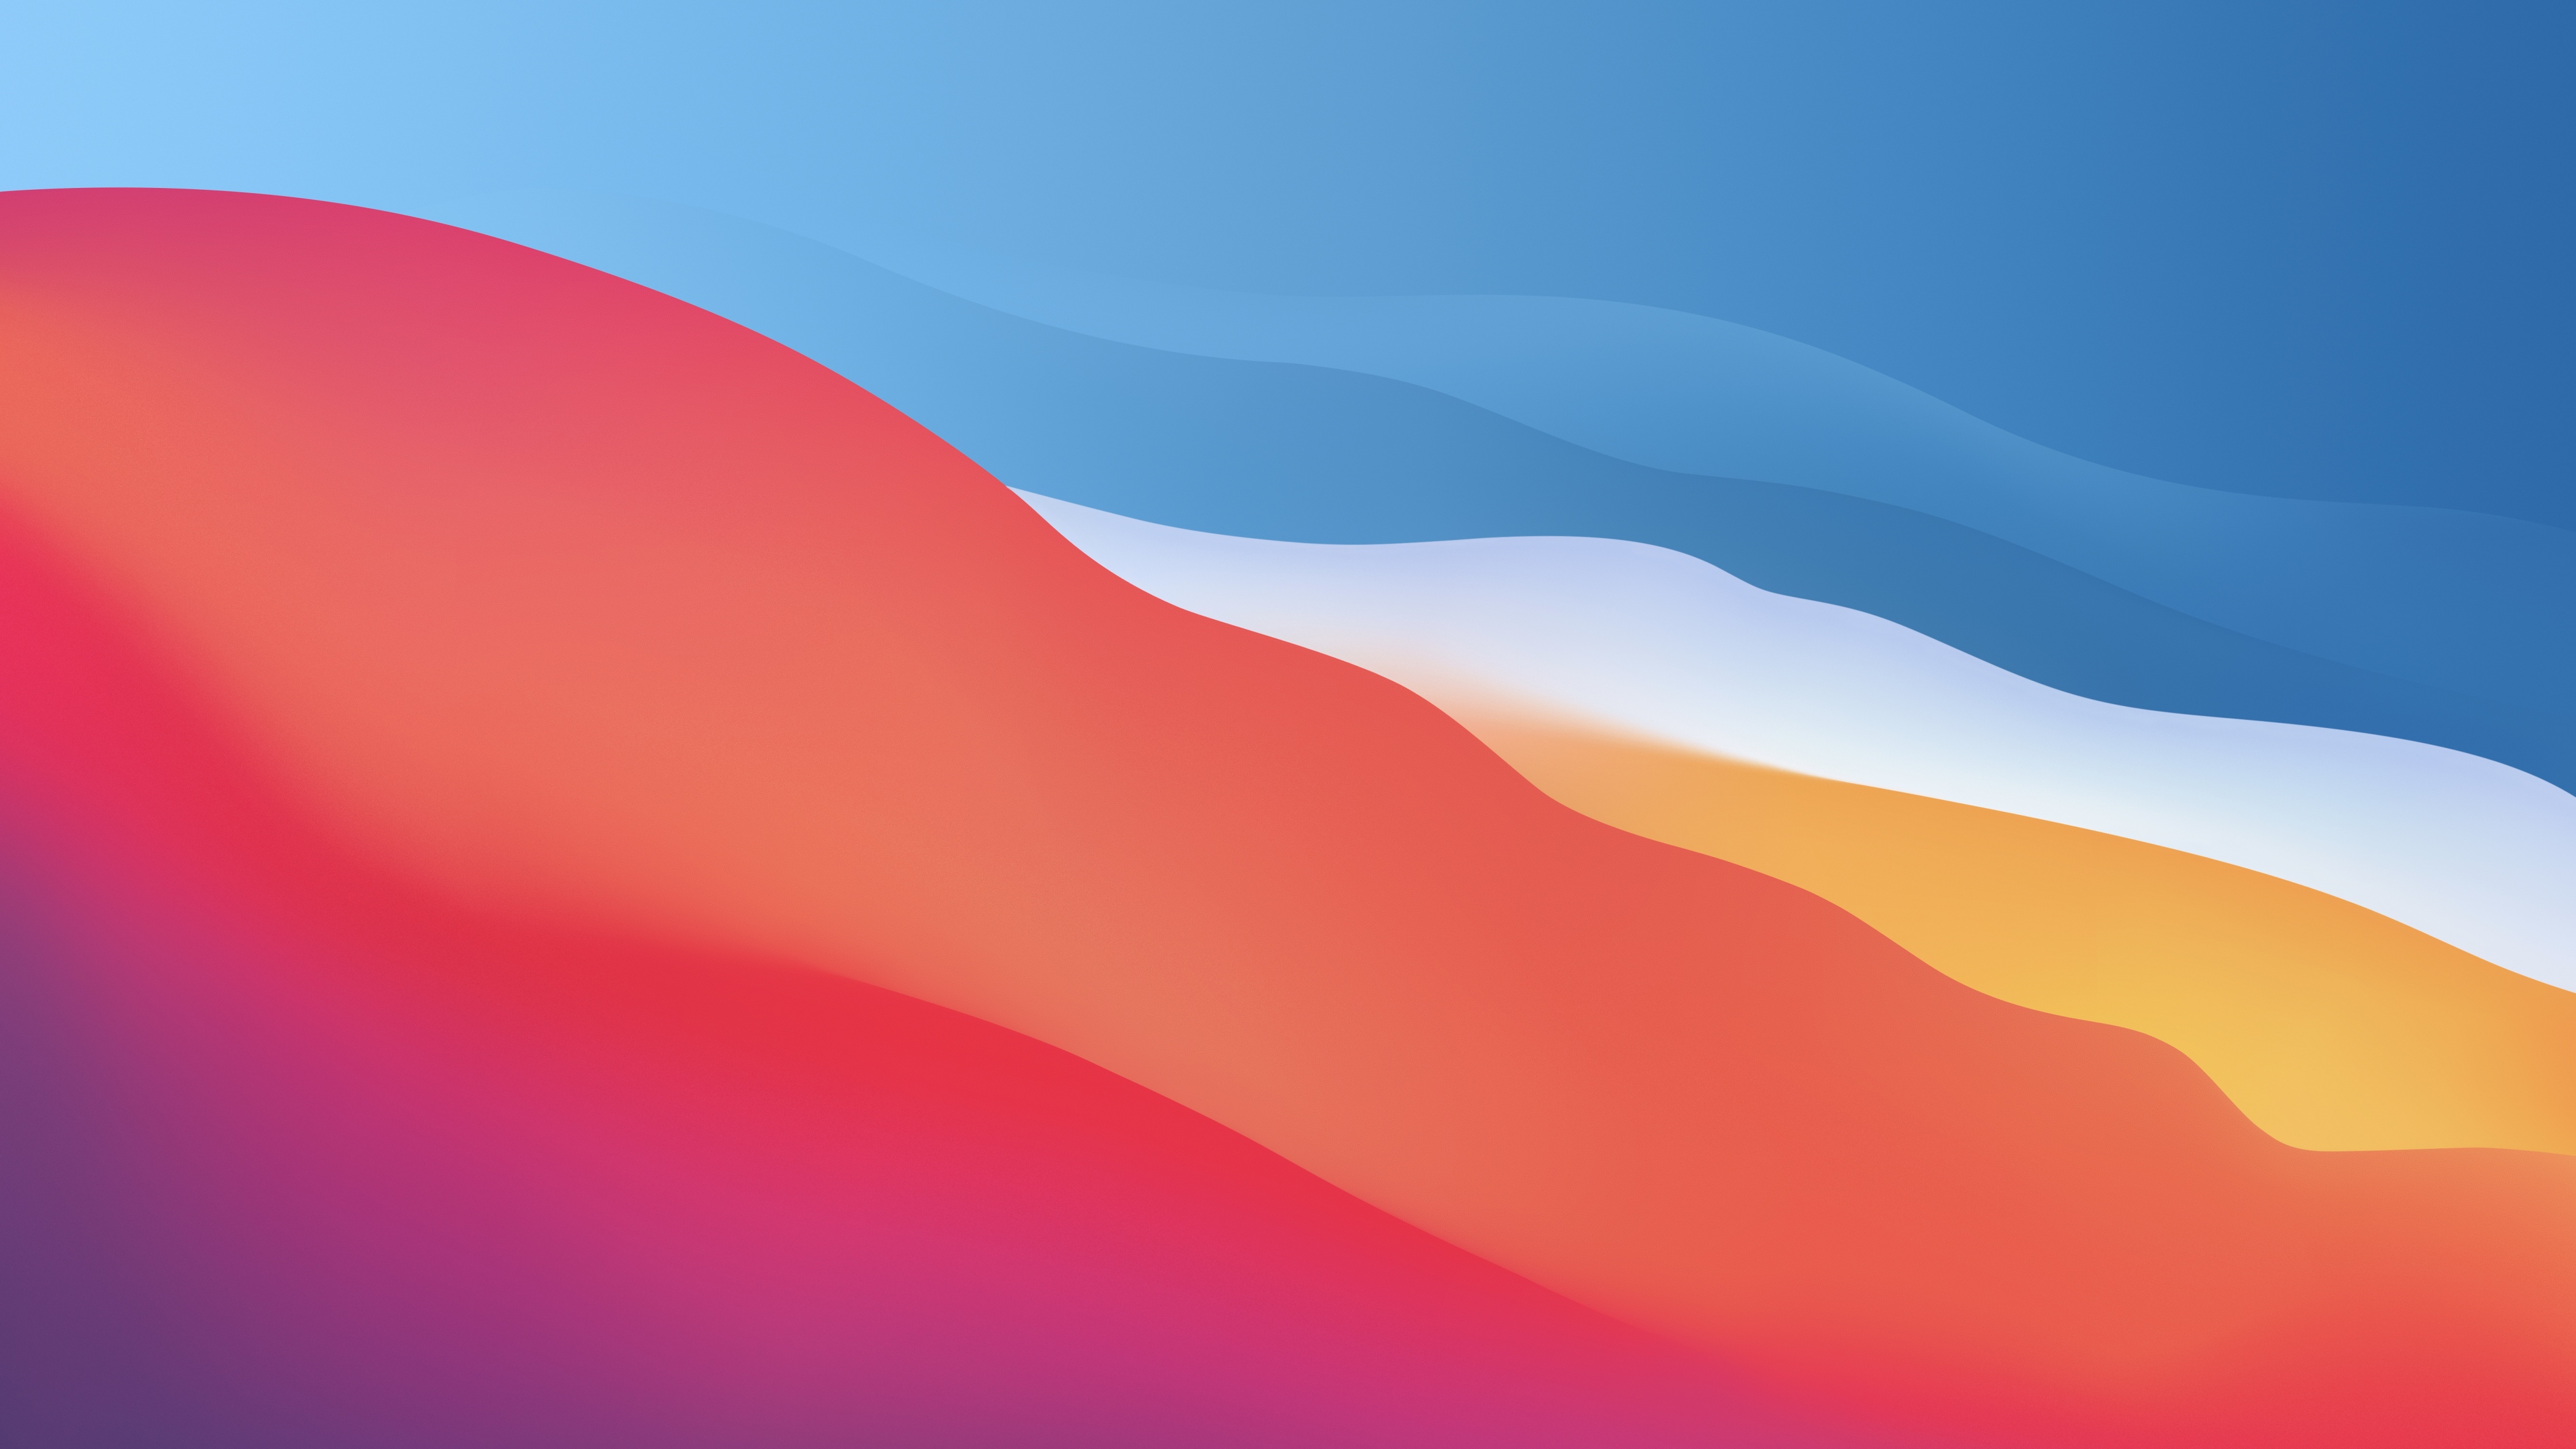 Hình nền macOS Big Sur 4K này sẽ khiến bạn mãn nhãn với màu sắc tươi sáng, sóng xoáy và gradients độc đáo. Được tạo ra với chất lượng mượt mà, hình ảnh này thực sự là một tác phẩm nghệ thuật. Hãy tải ngay và sở hữu một hình nền độc đáo cho thiết bị của bạn.